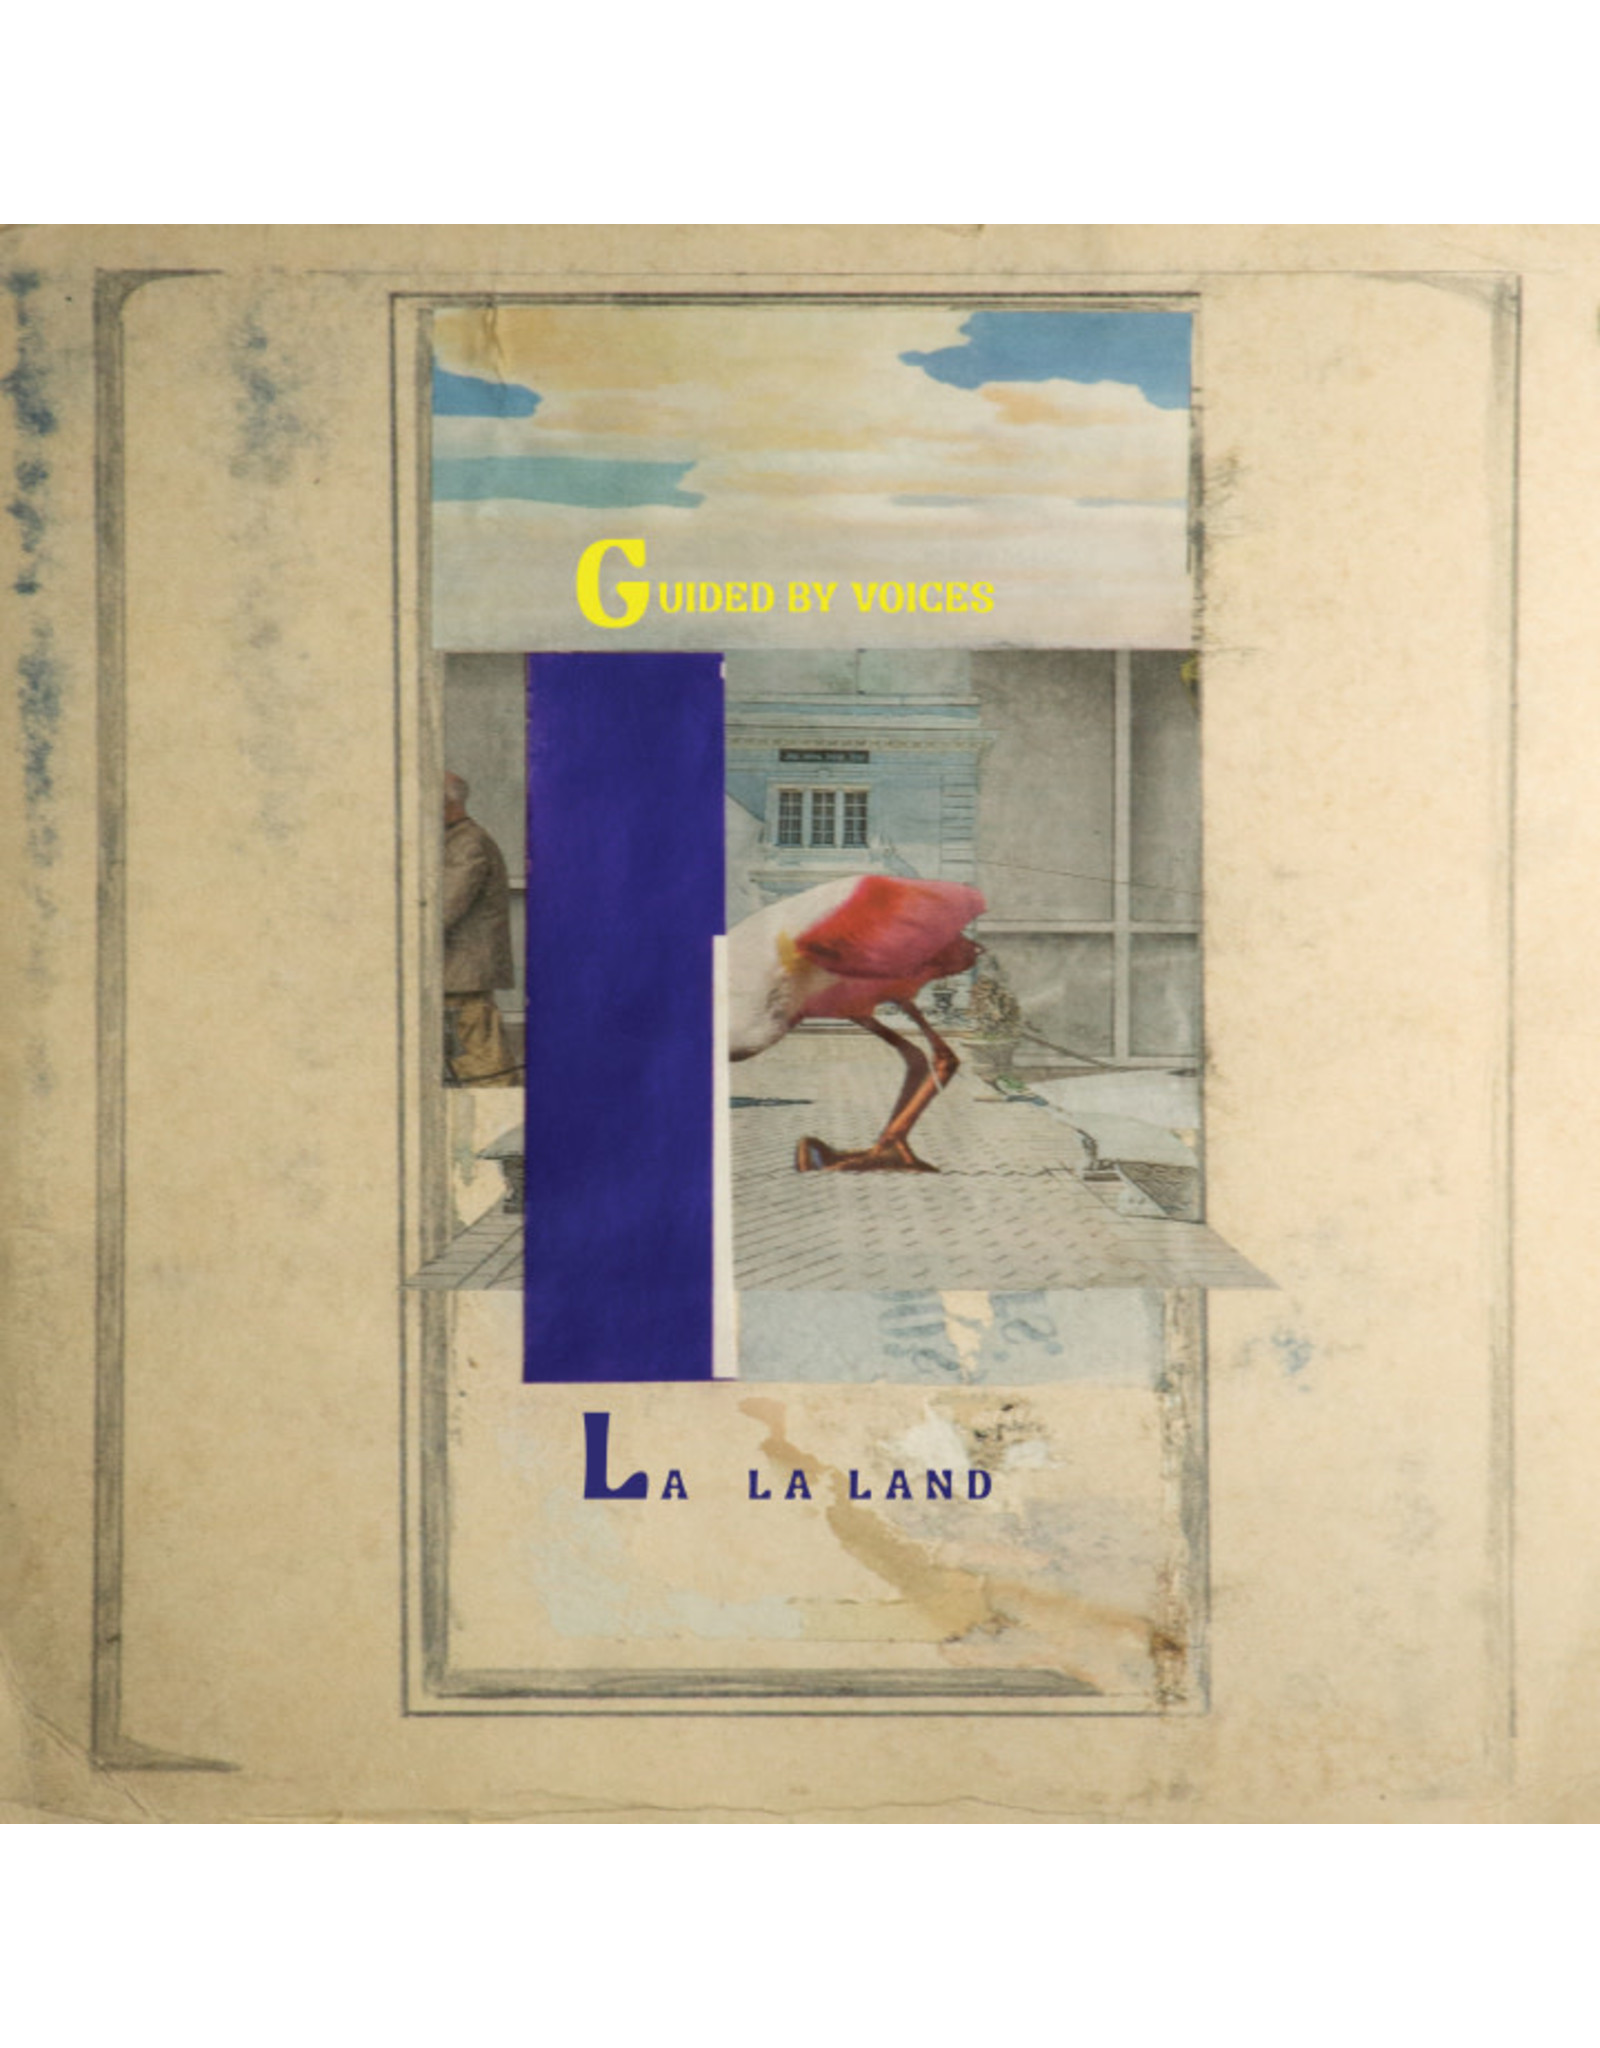 GBV Inc. Guided By Voices: La La Land LP